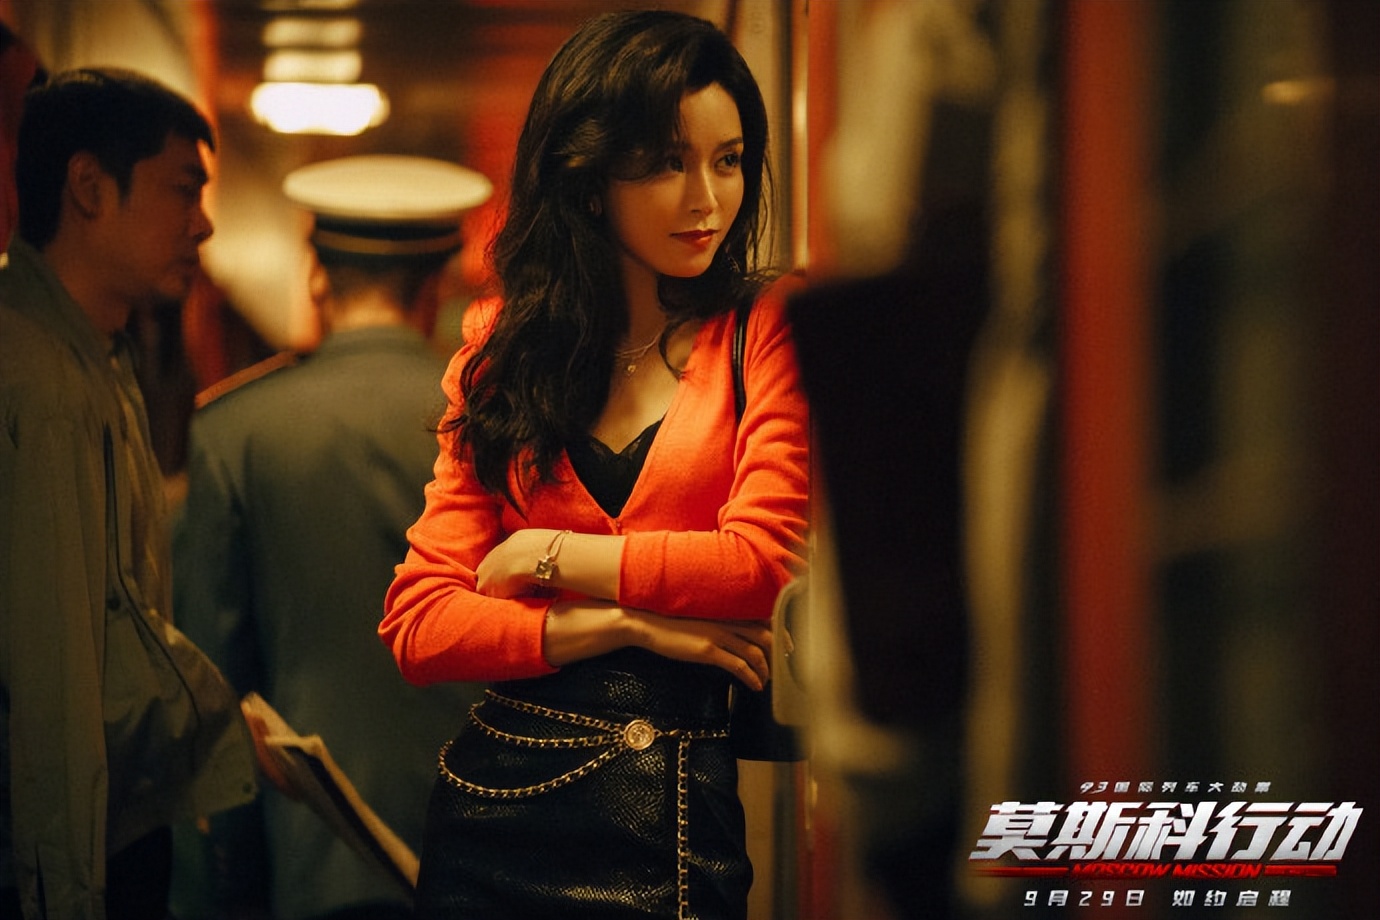 《唐人街探案3》,文咏珊就被百亿导演陈思诚重用,相继合作了《误杀2